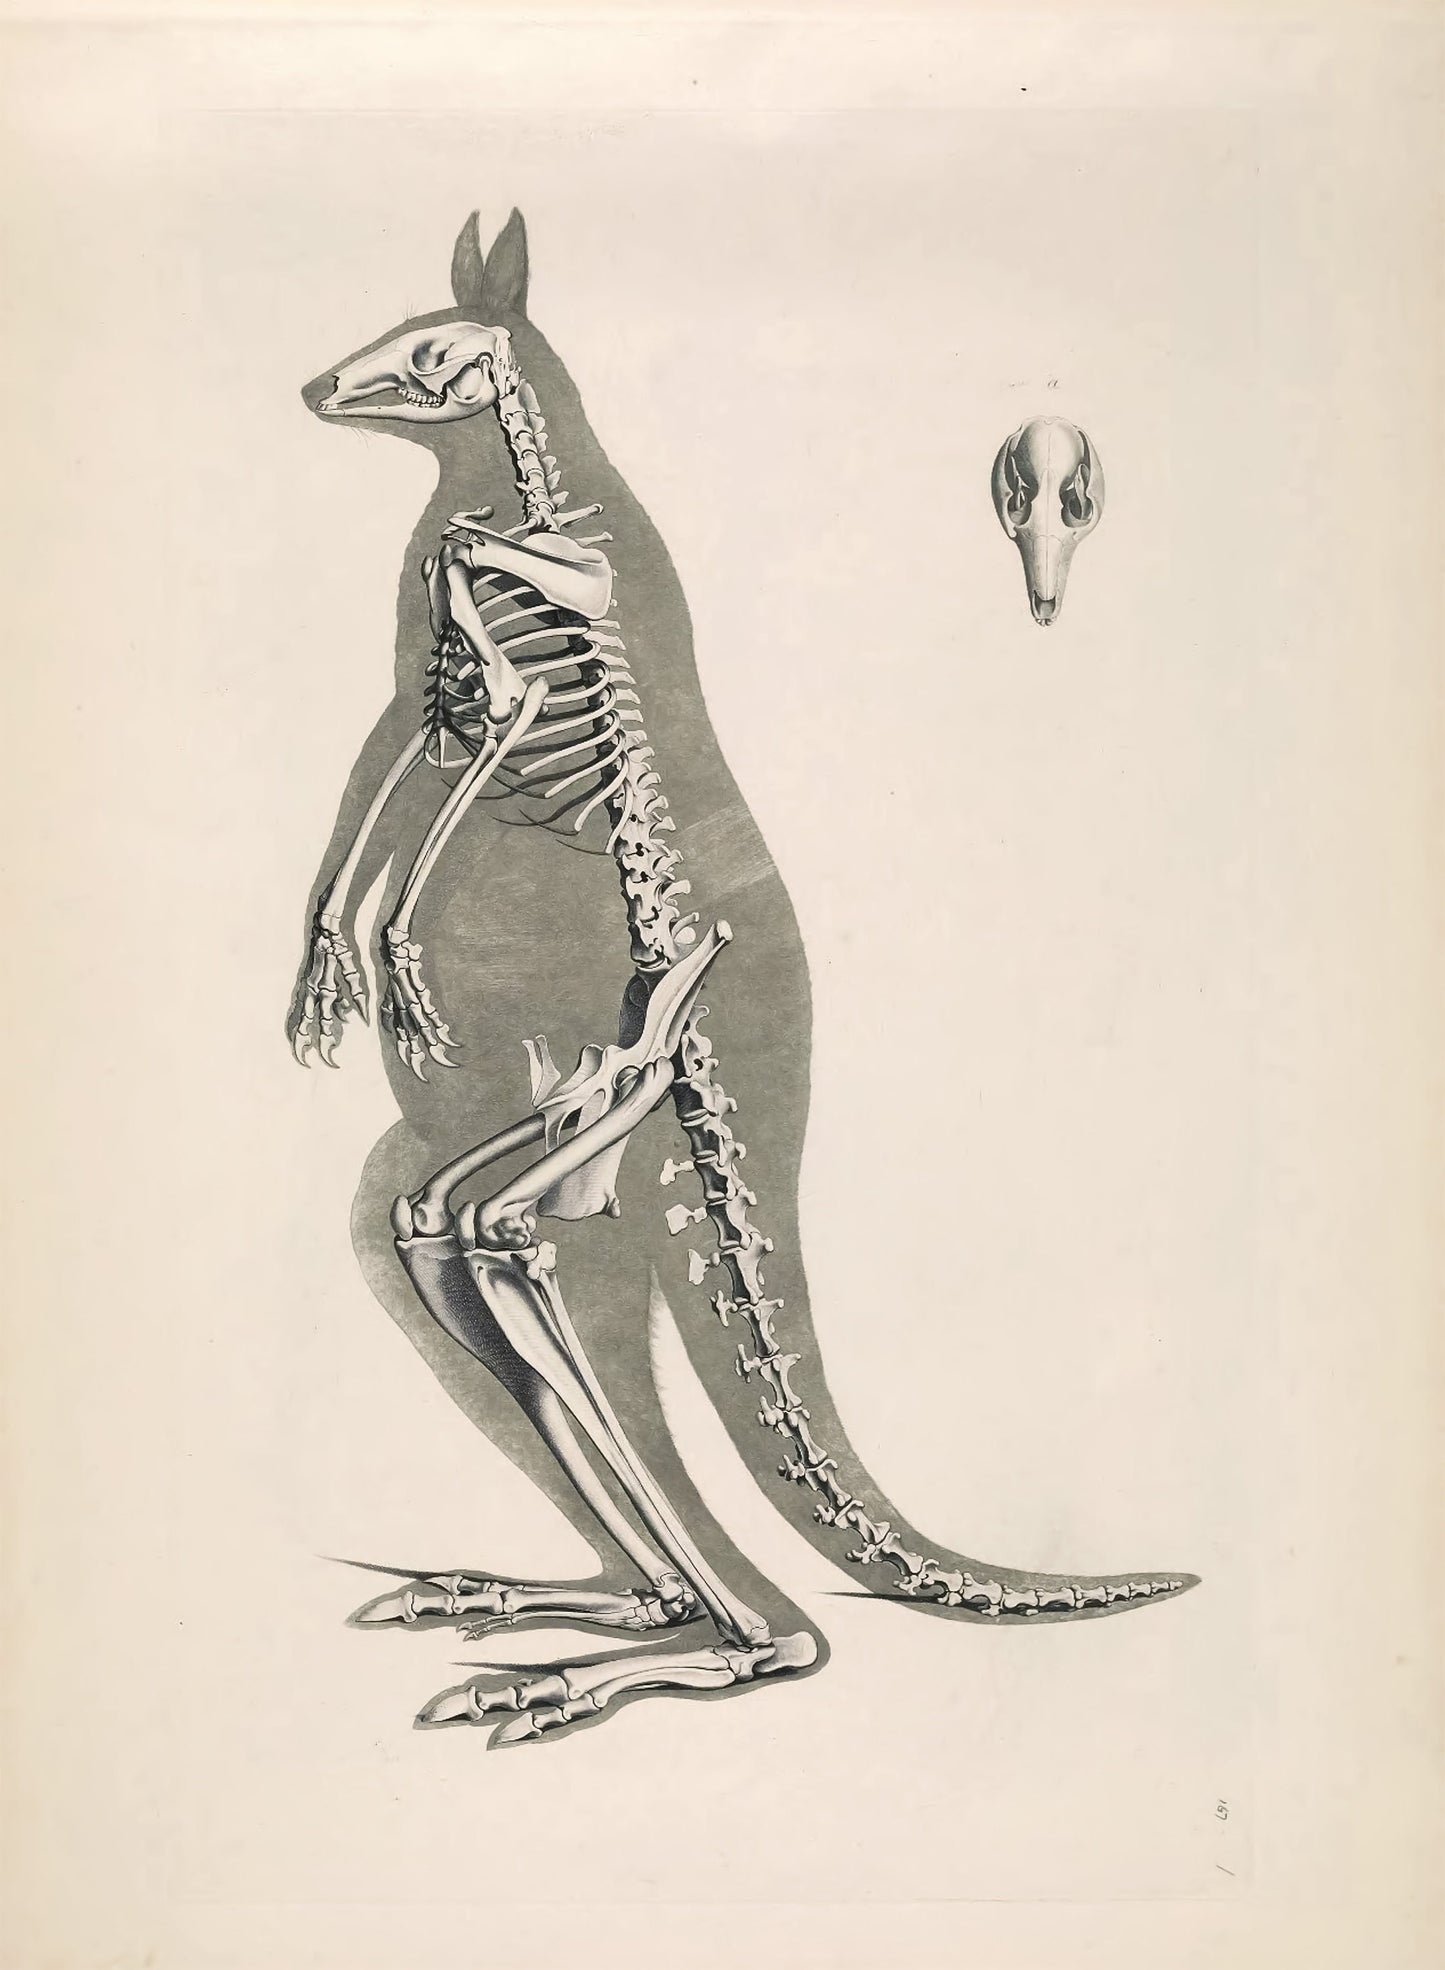 Illustrations of Animal Skeletons Set 2 [55 Images]